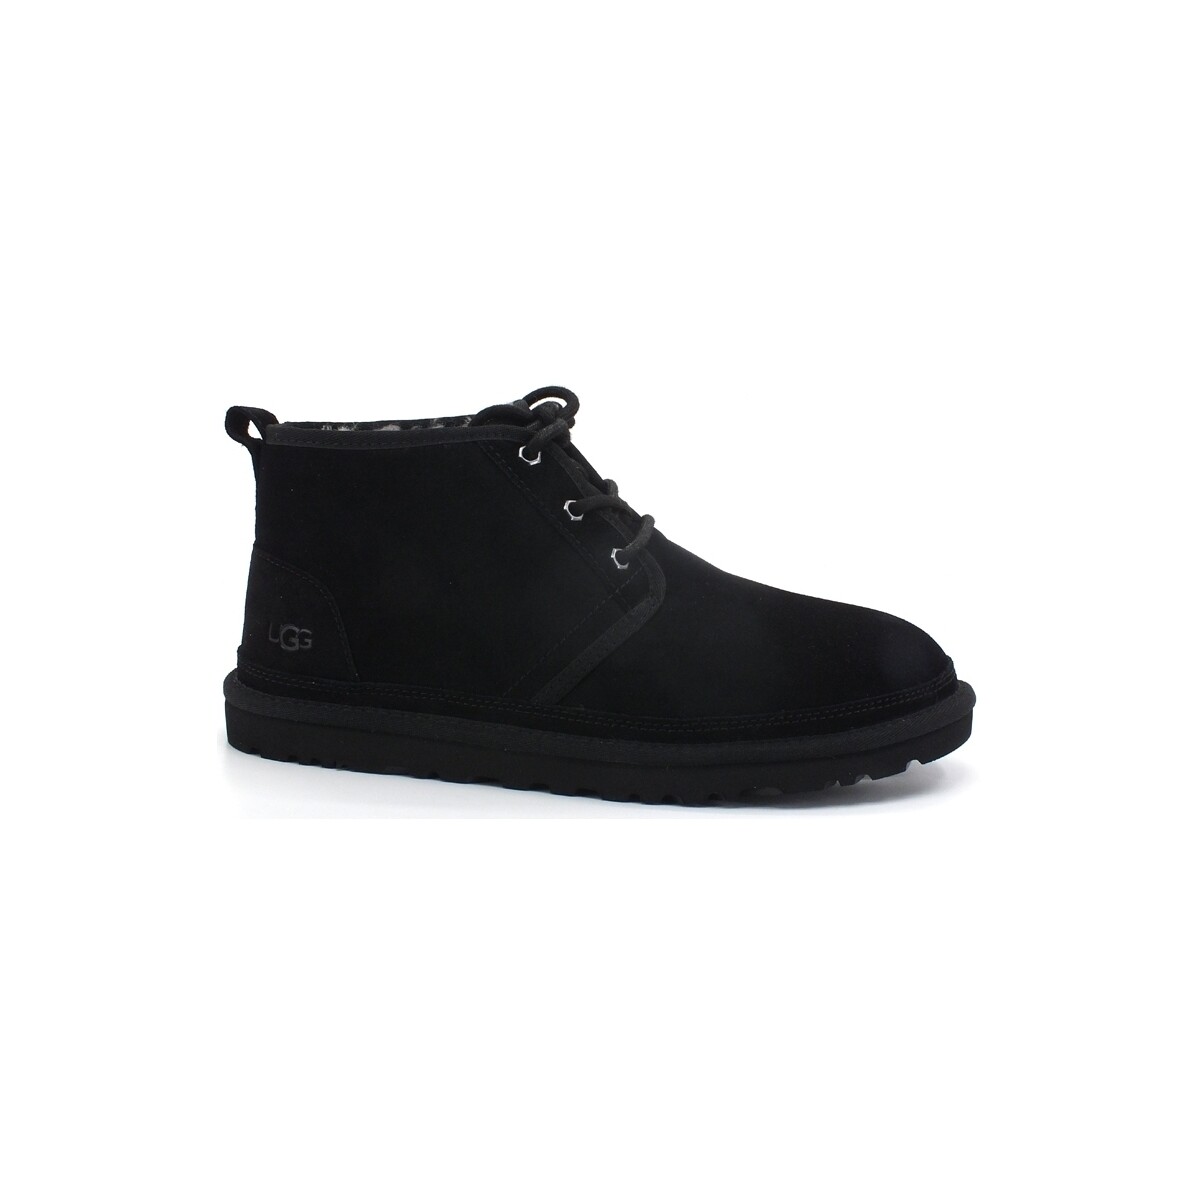 Chaussures Homme Multisport UGG M Neumel Stivaletto Stringata Black M3236 Noir